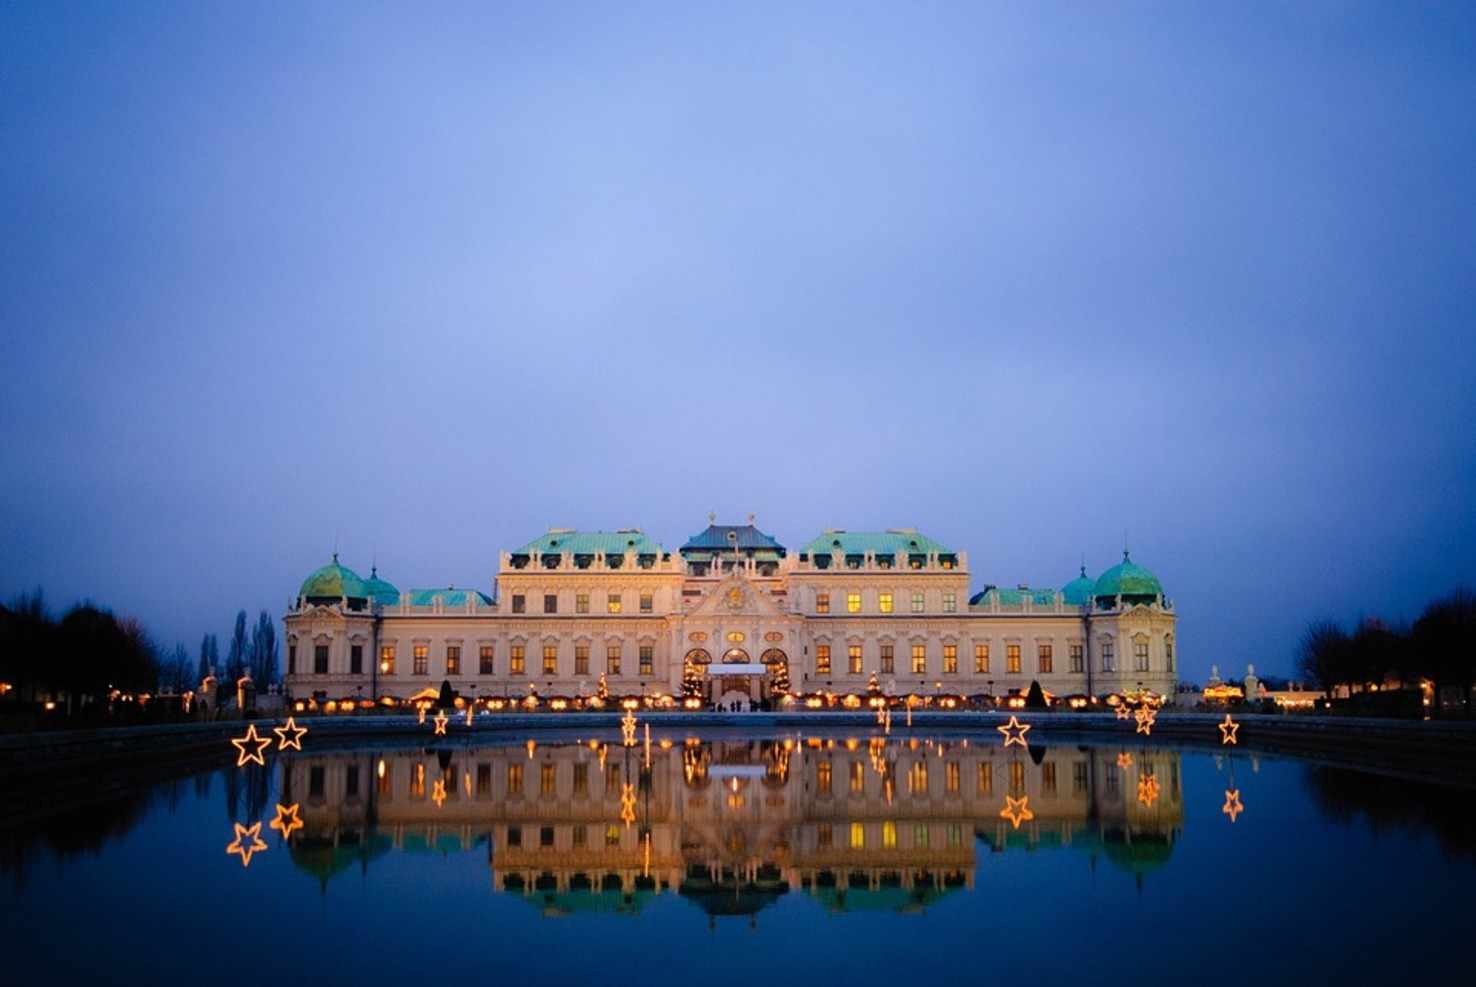 Large night belvedere vienna austria mirroring castle